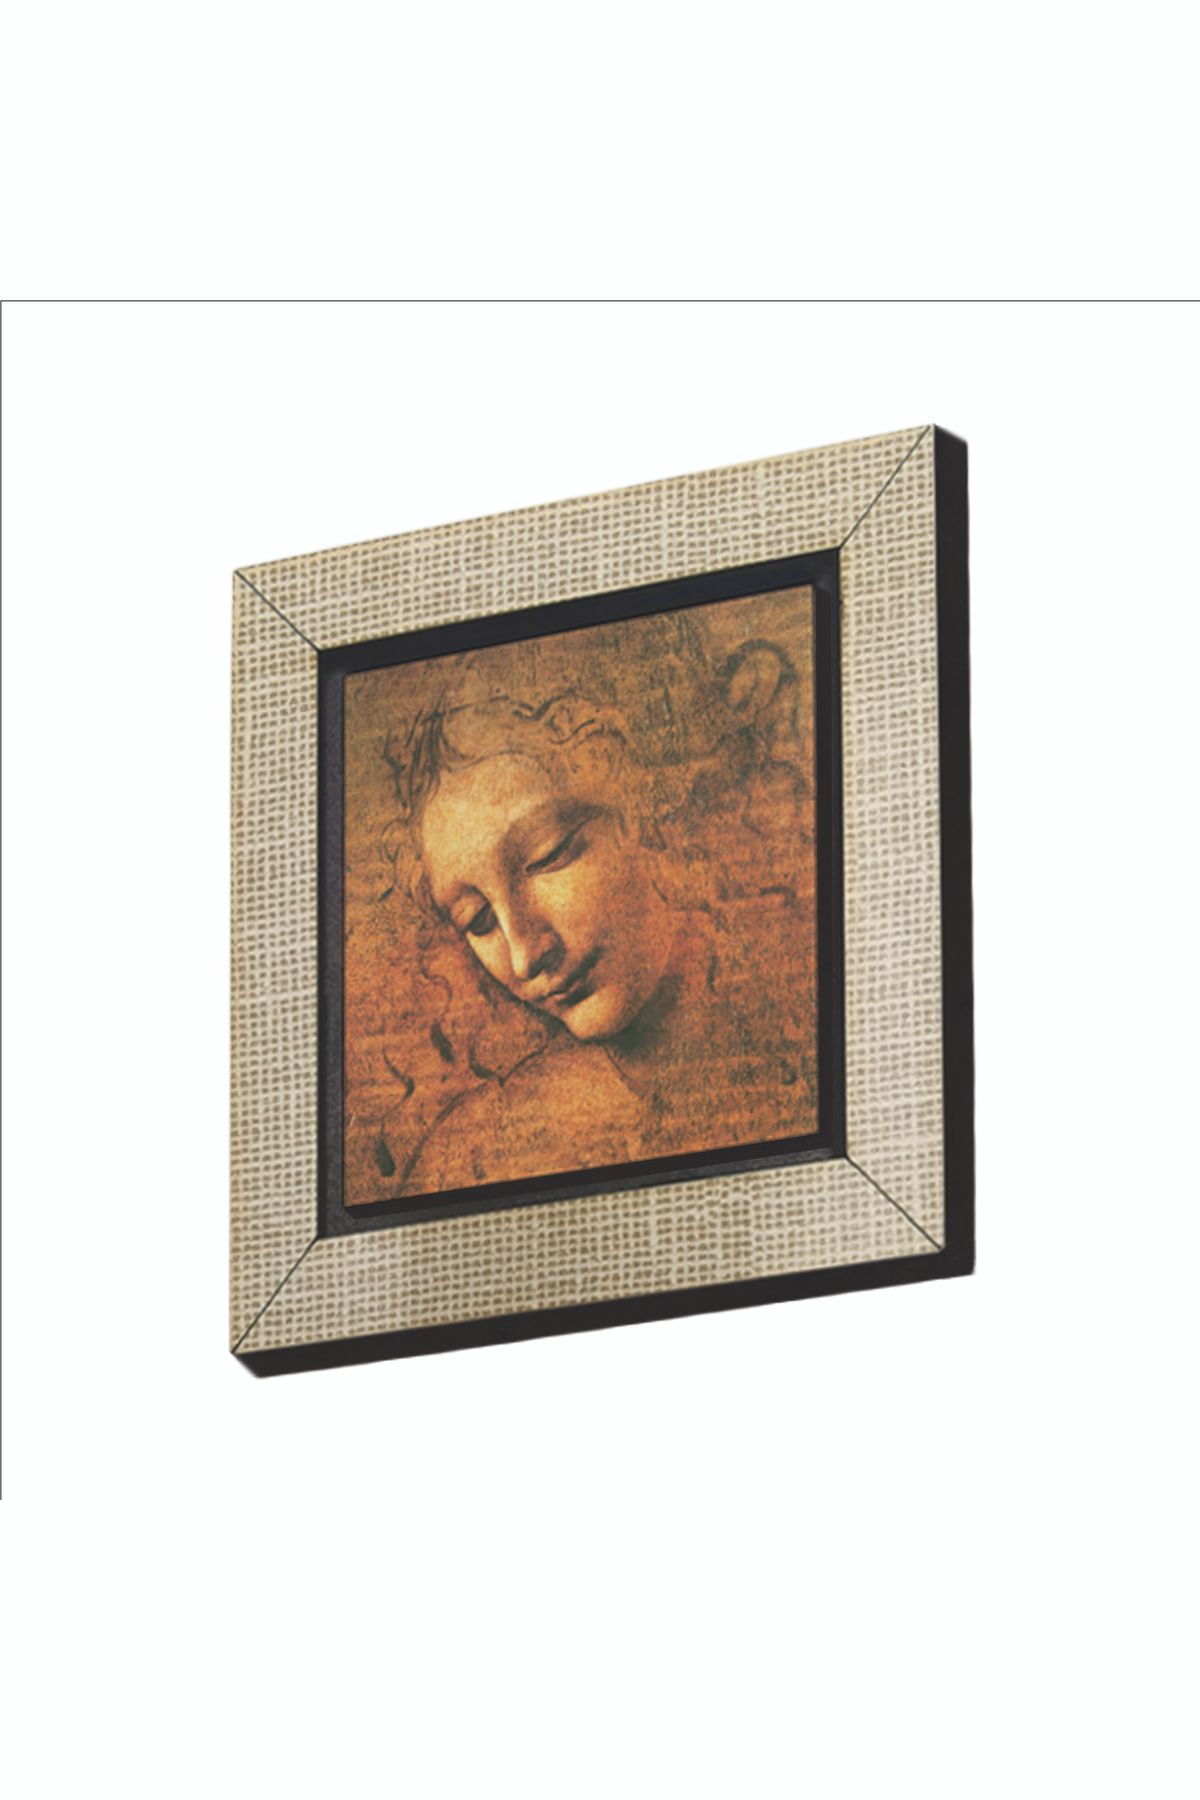 BAKSEPETE Kadın Başı Eskizi Leonardo Da Vinci, 1508 Baskılı Mdf Magnetkrg-143